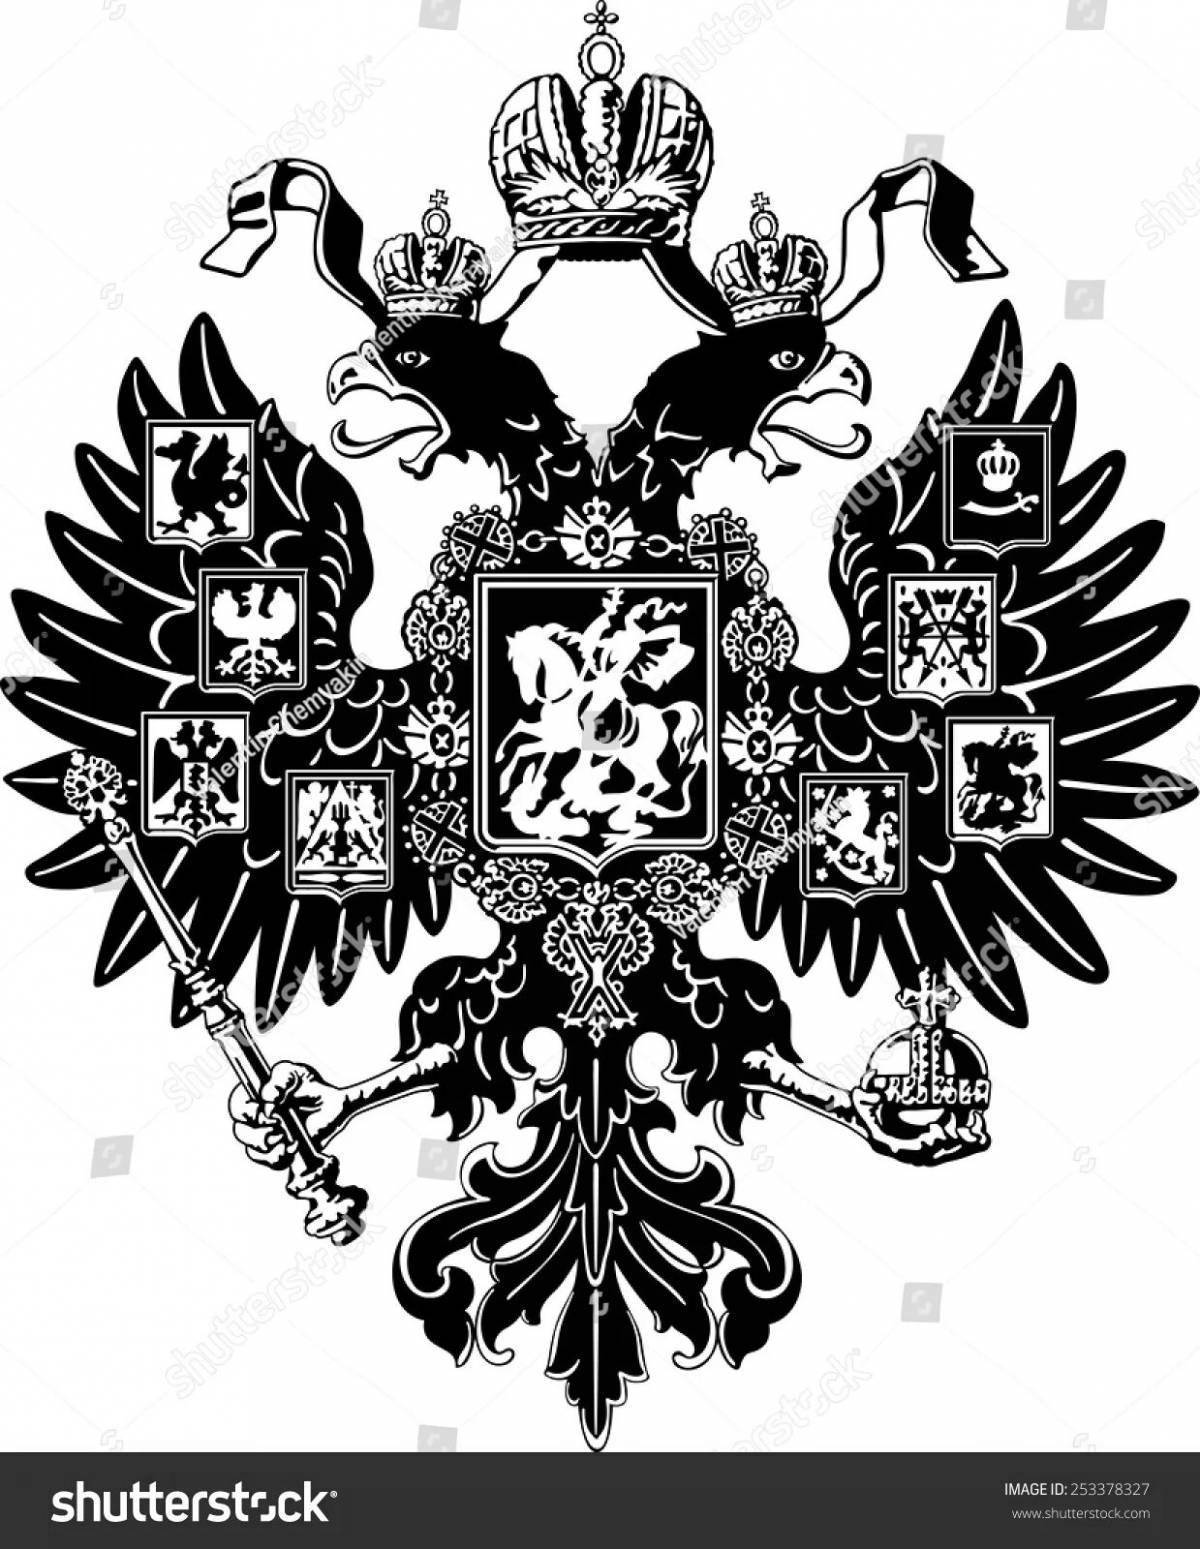 Двуглавый Орел Российской империи 1800-1812